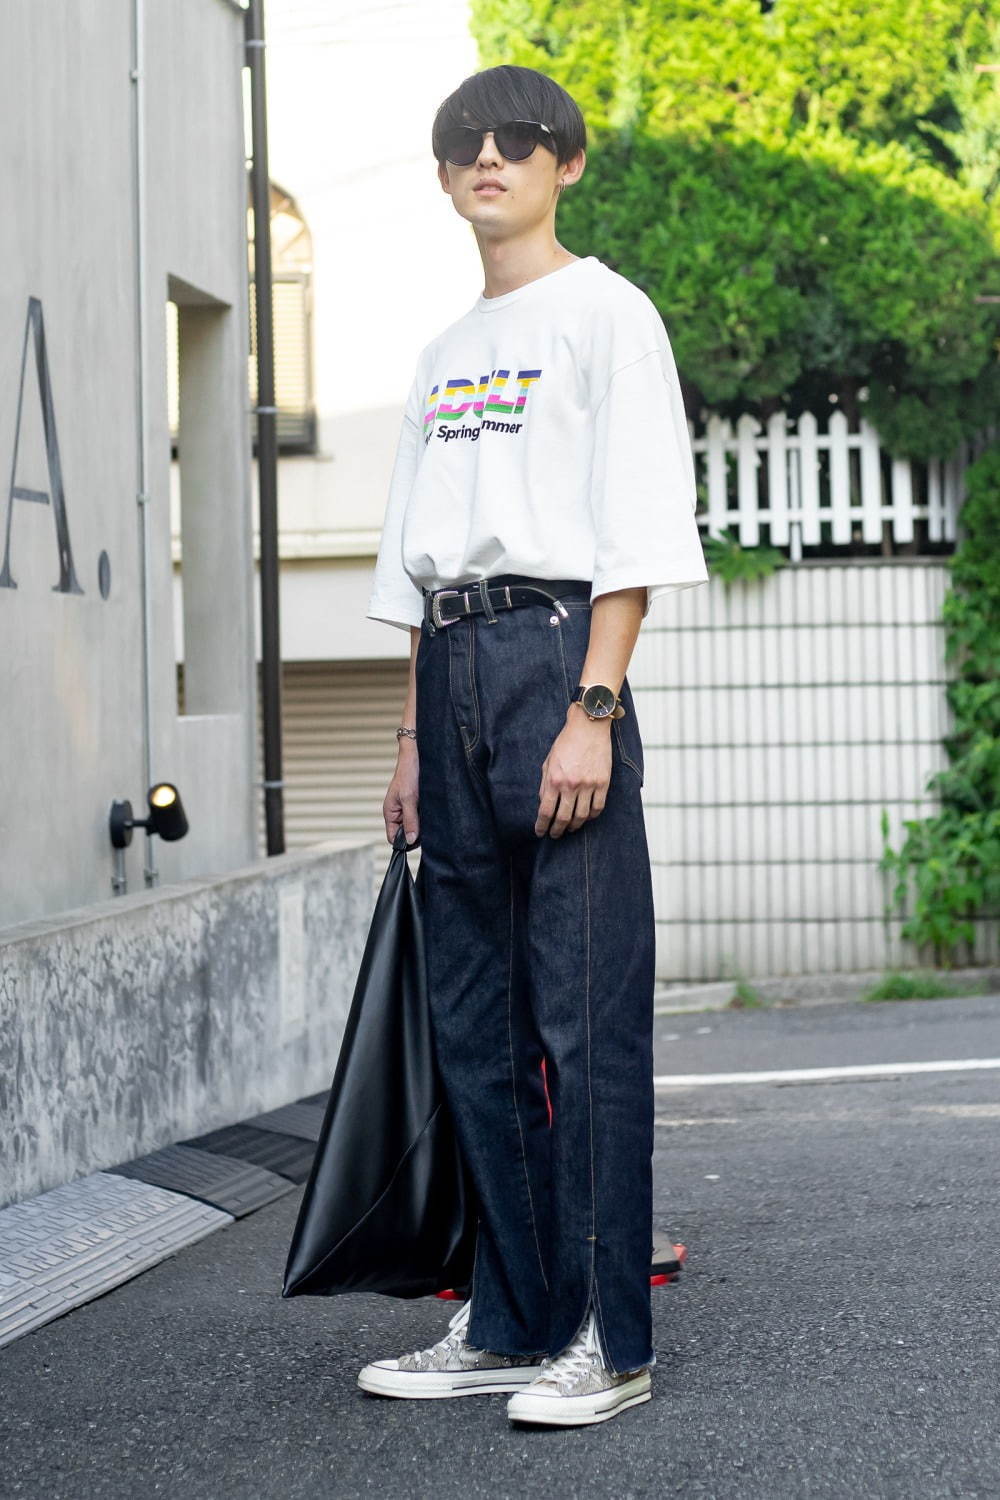 根本 翼さん ダイリク Dairiku カイコー Kaiko 渋谷ストリートスナップ ファッションプレス